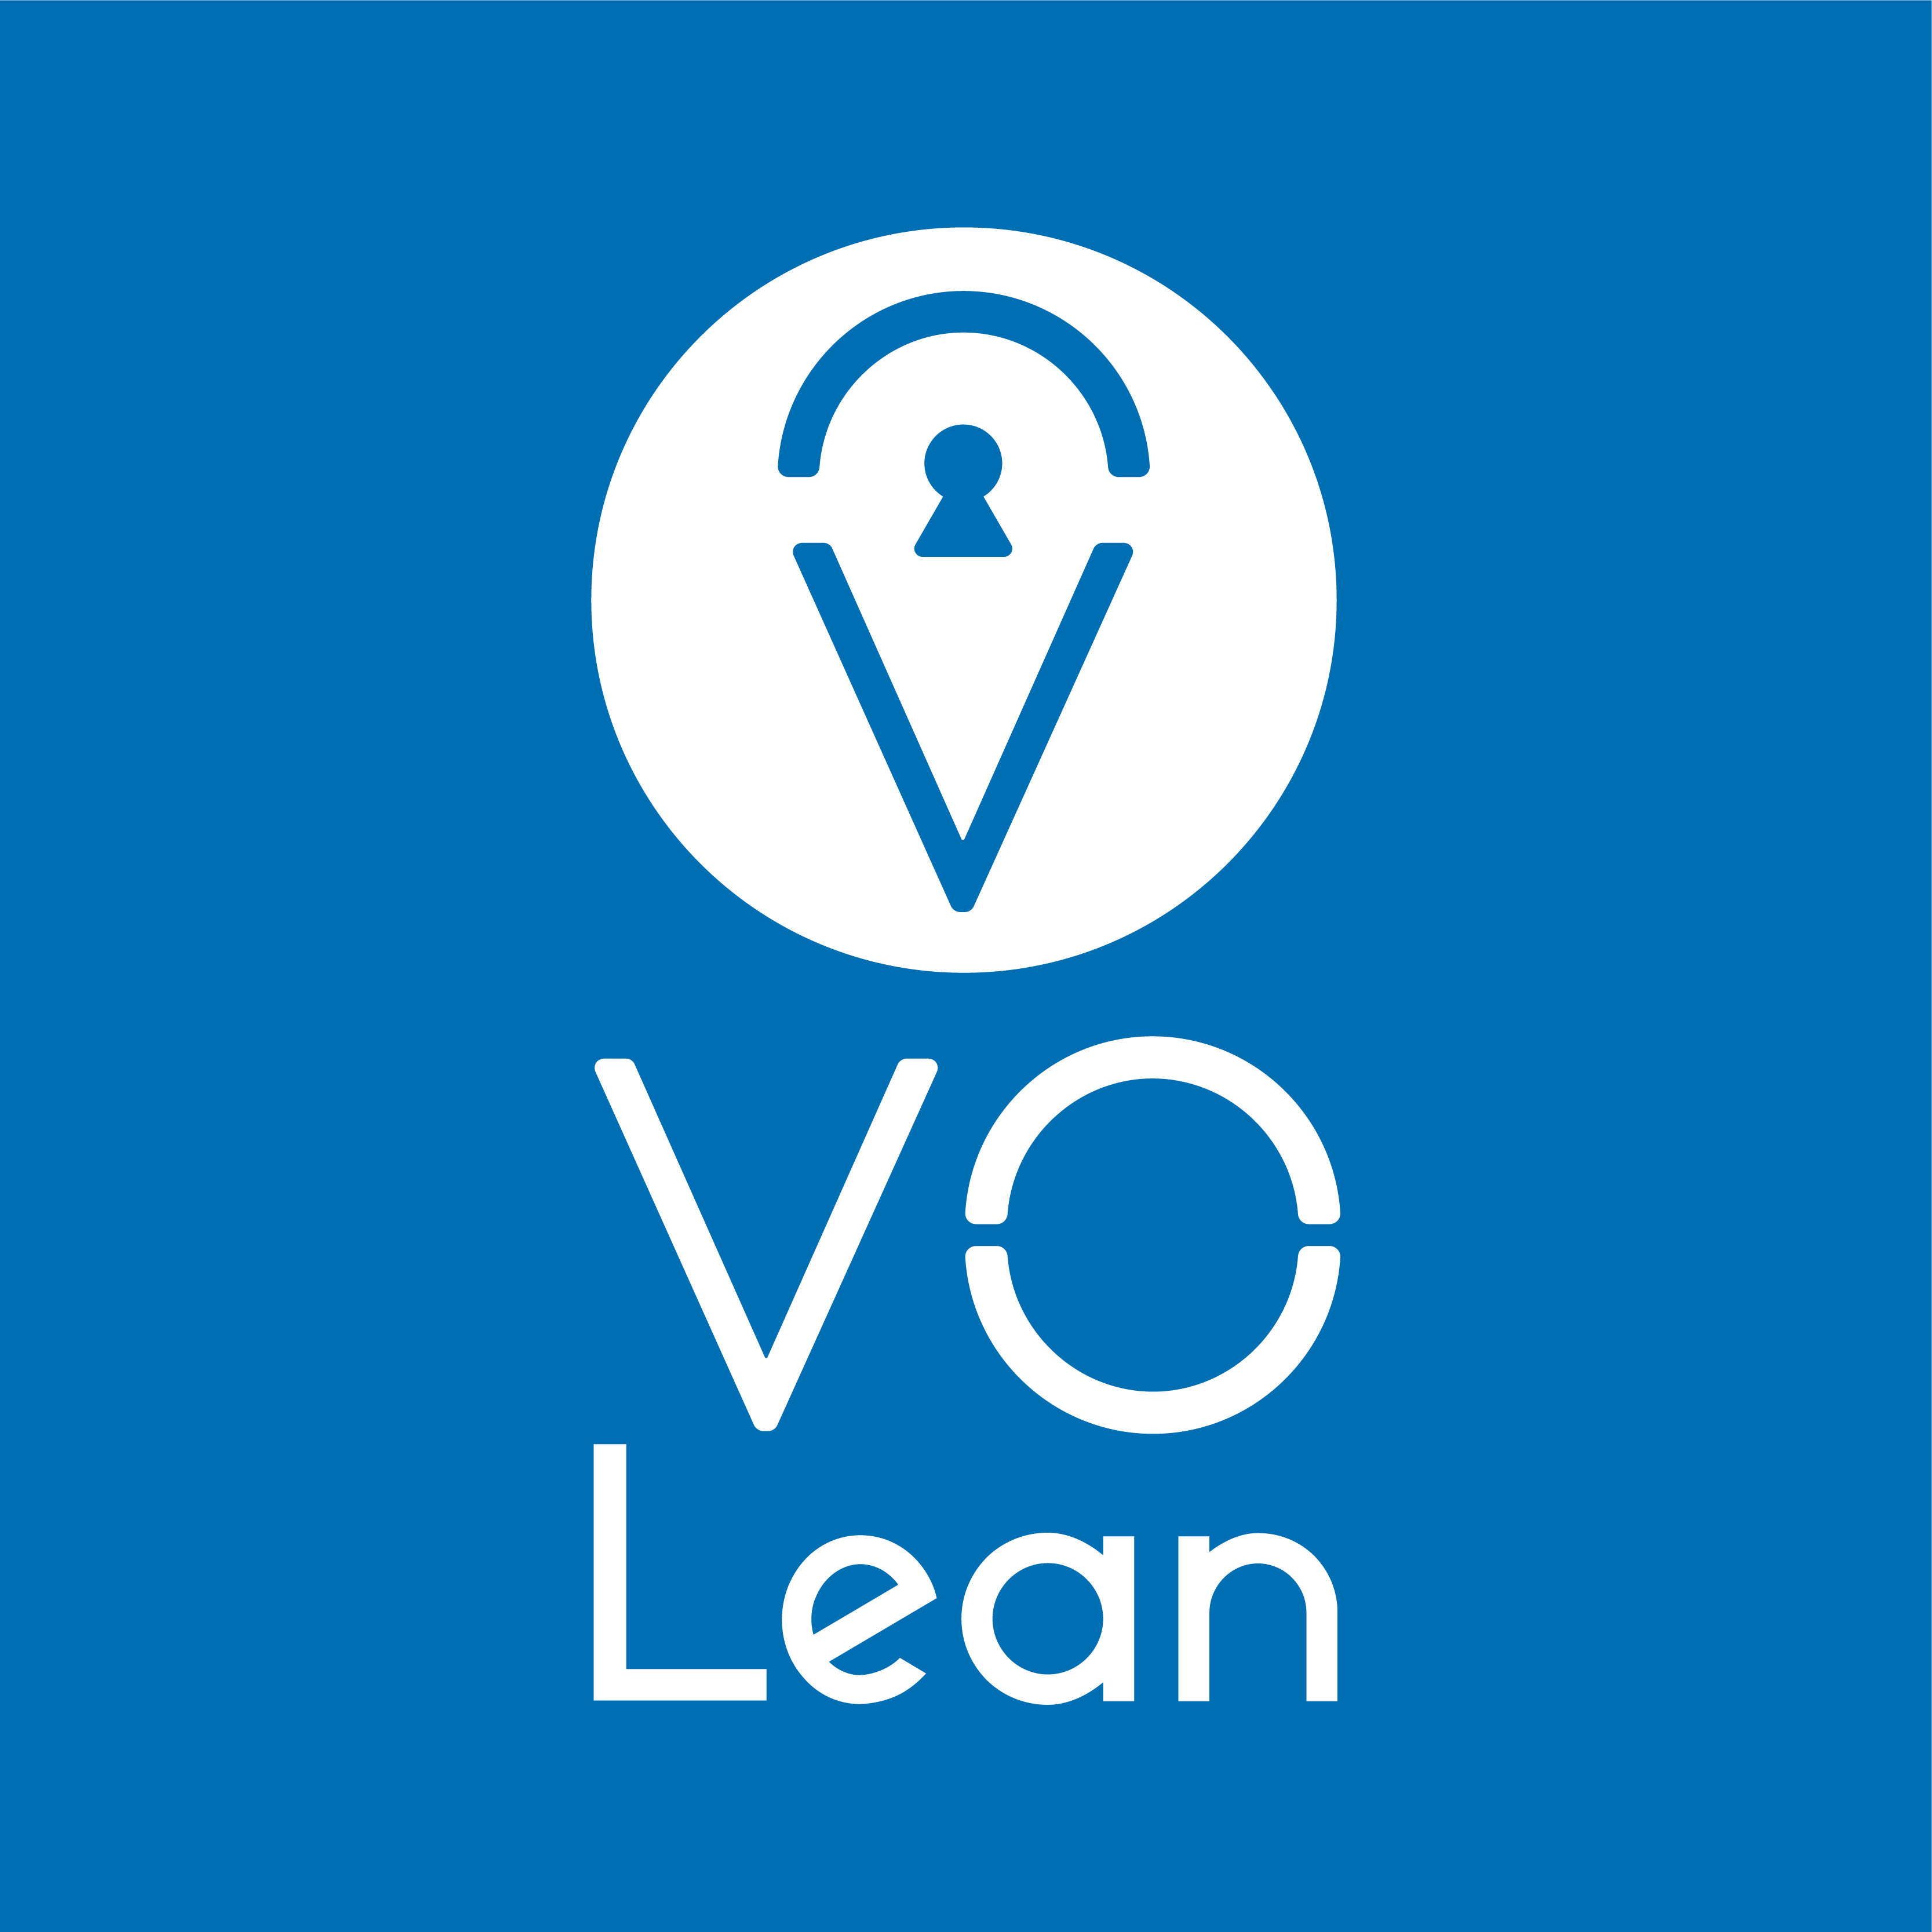 VO Lean